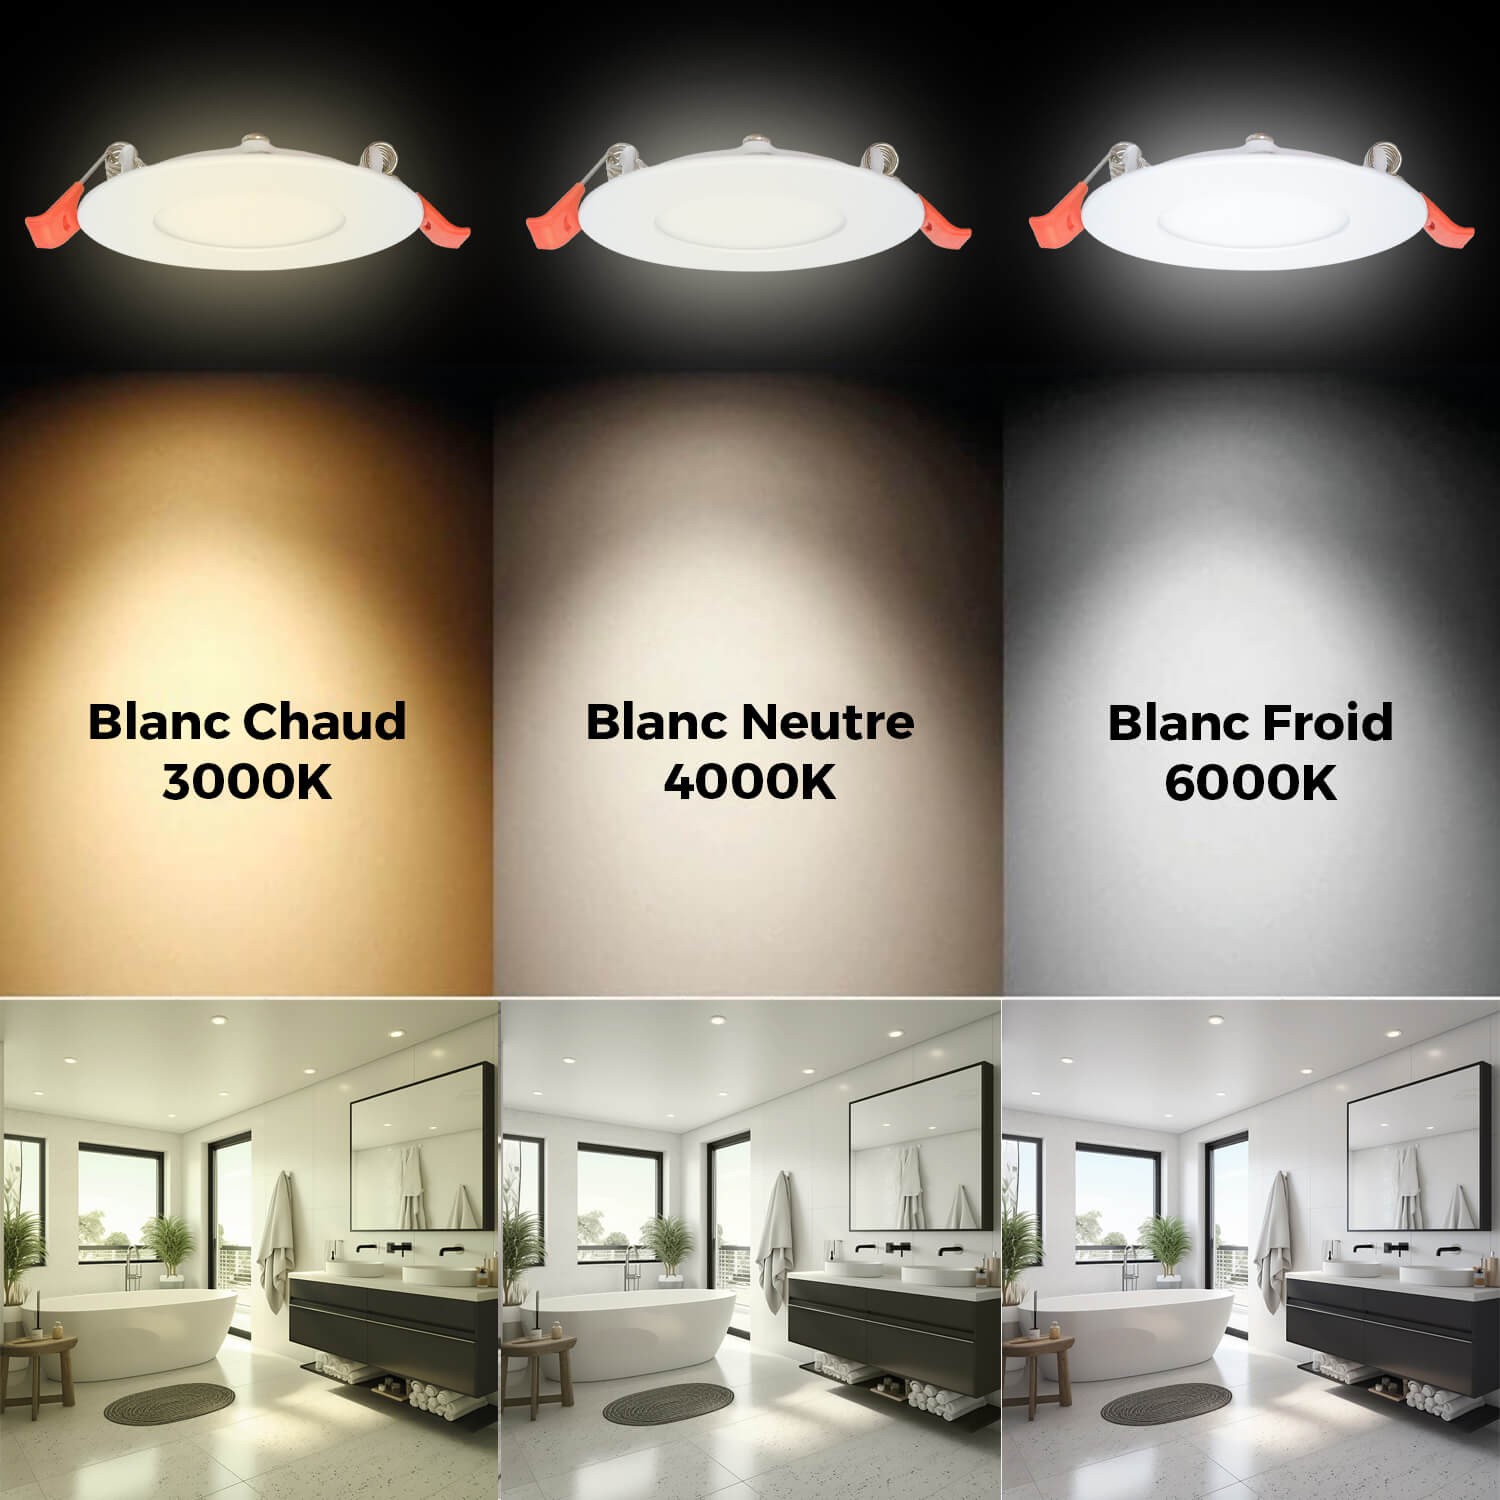 Éclairez votre intérieur avec 20 Spots LED Extra-Plats 7W Blanc Froid !